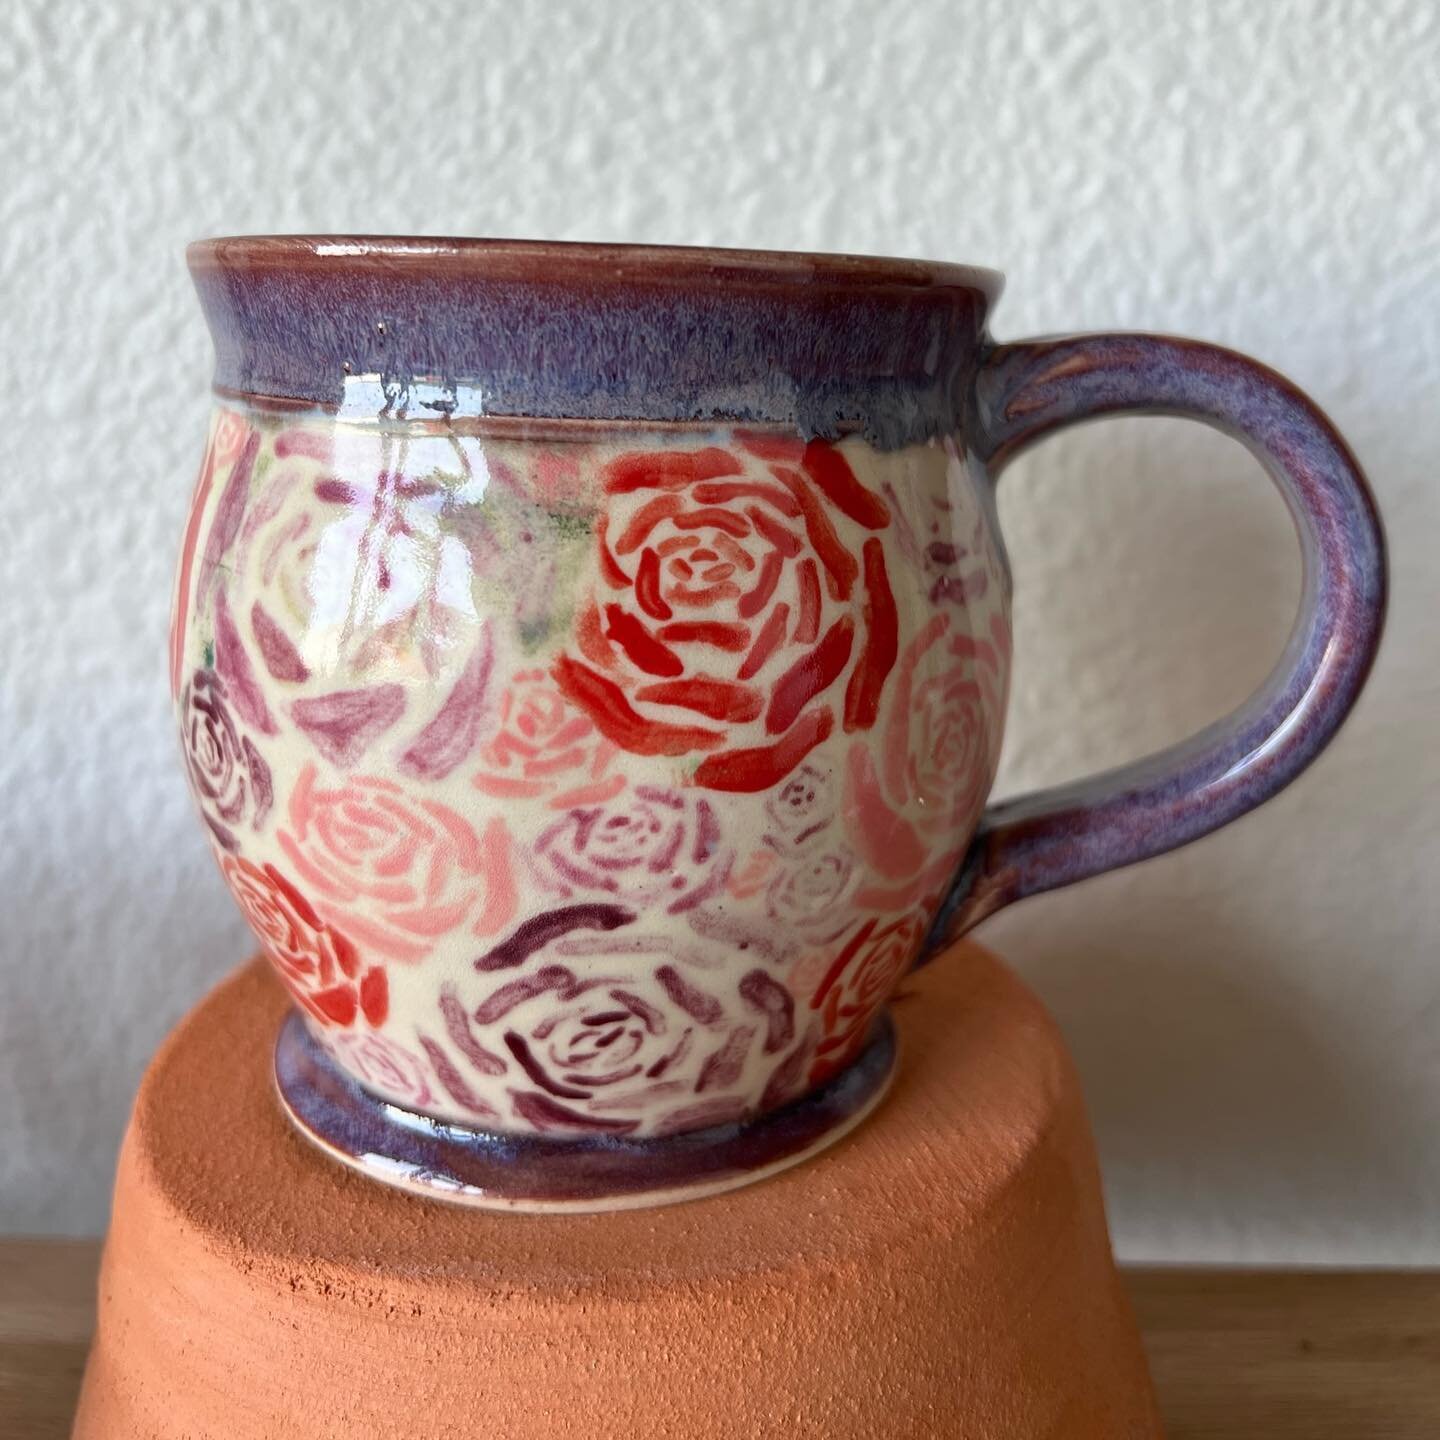 Mugshot Monday! 📸 
-
-
-
#mugshot #mugshotmonday #mugs #clay #handmade #handmademug #ceramics #pottery #cer&aacute;mica #ceramique #fyp #explore #artistexplore #potterystudio #potter #barro #ceramiccup #ceramicmug #underglaze #glaze